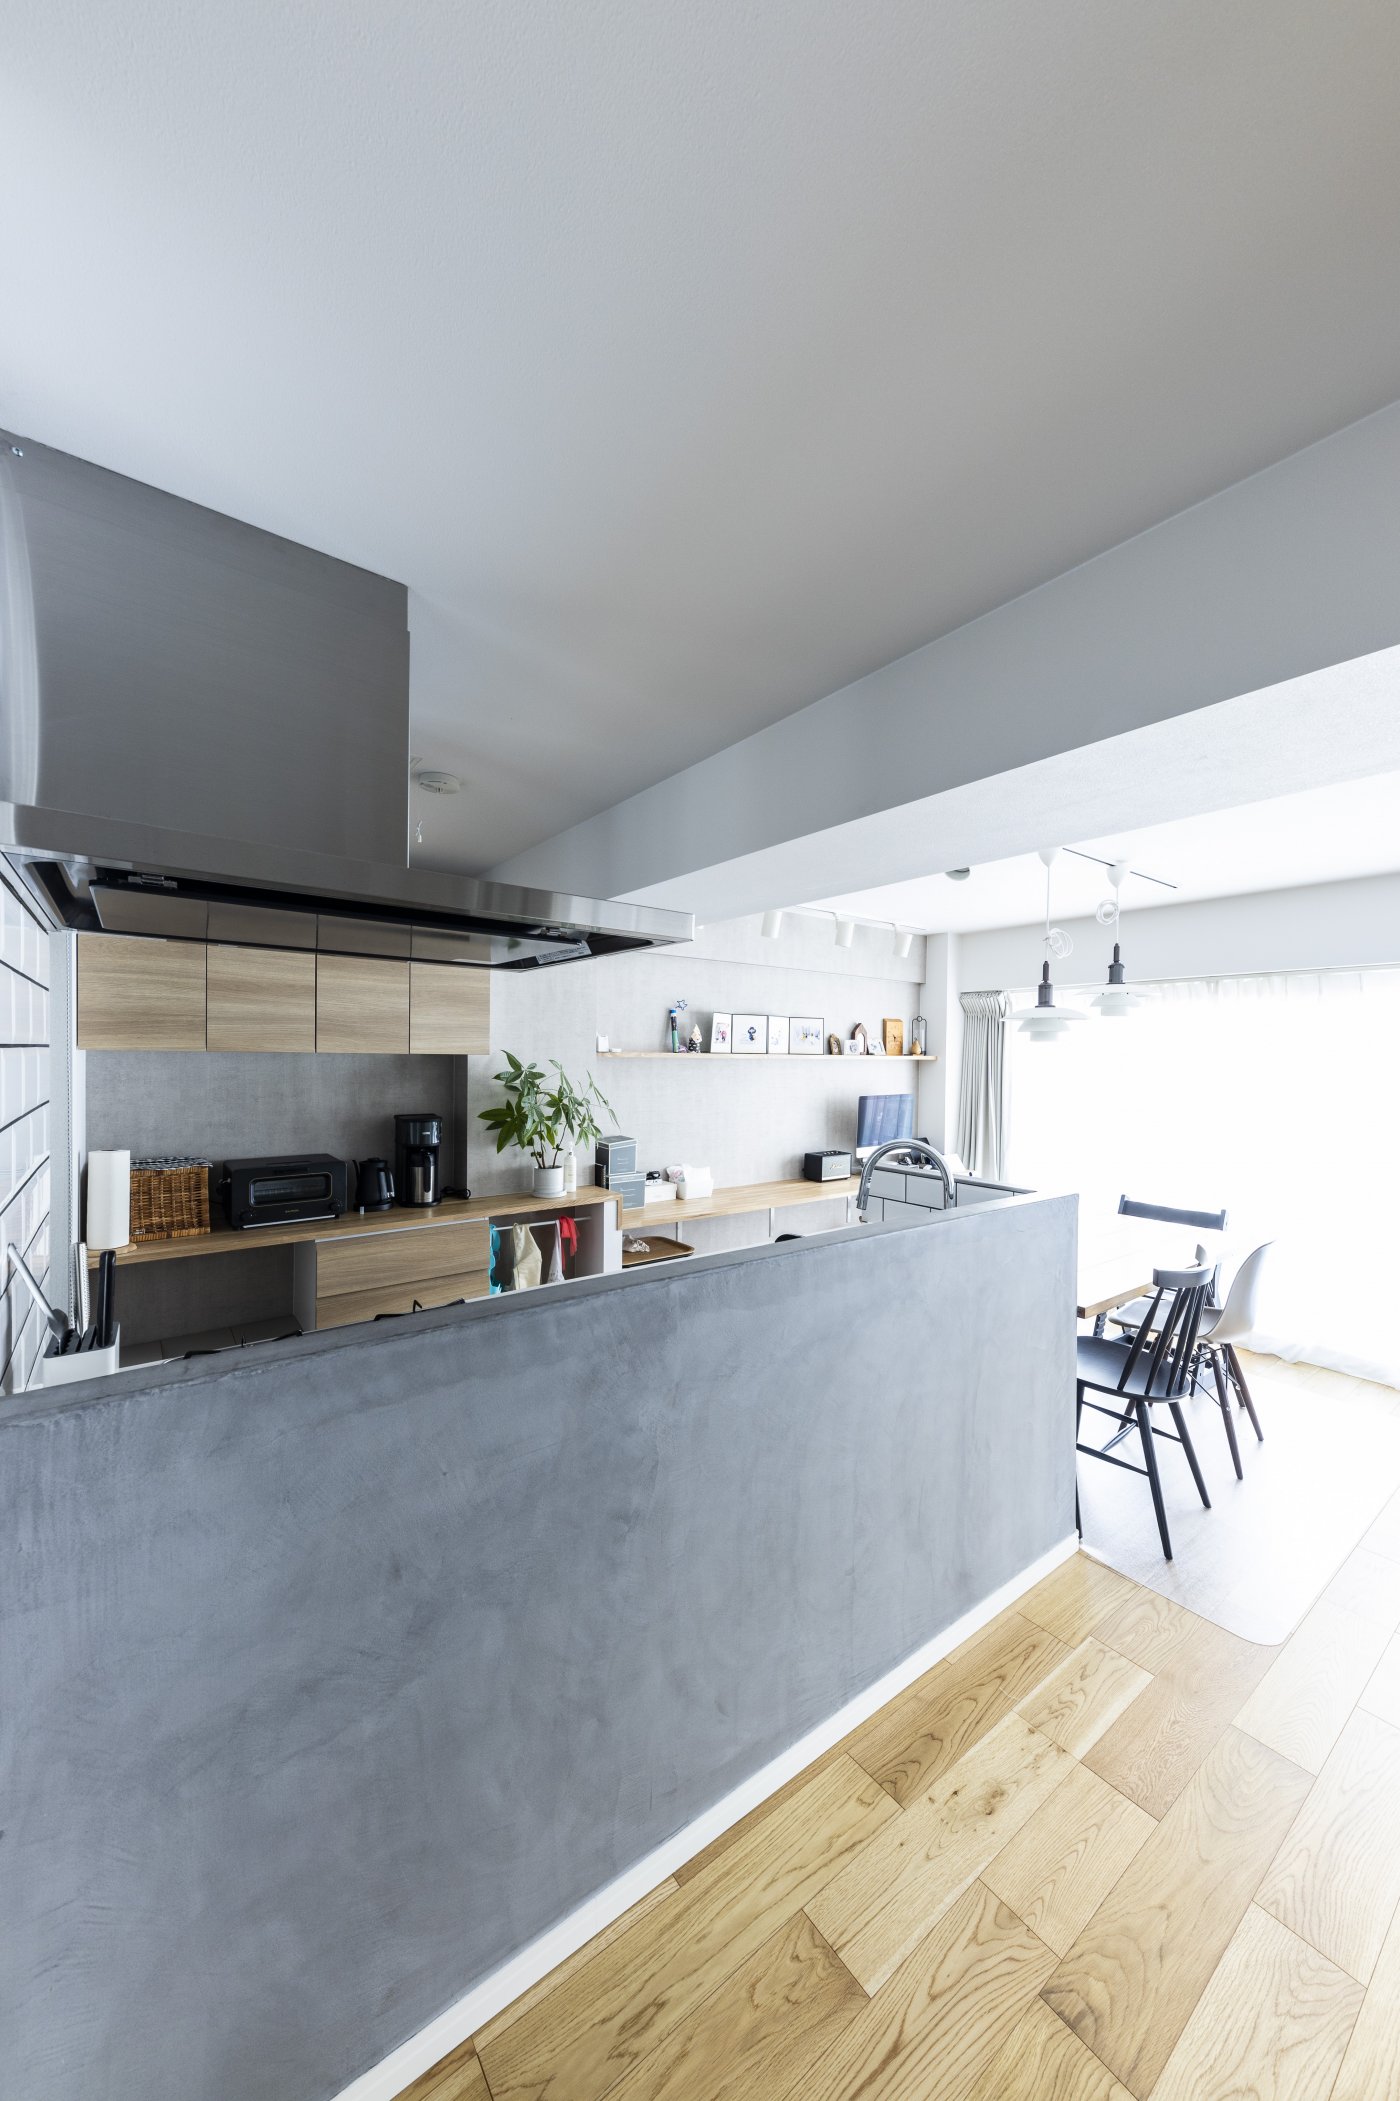 腰壁がモルタルのような質感のかっこいいキッチン。シンク側はタイル仕上げ。冷蔵庫やレンジボードはパントリー内に収めてキッチンをすっきりと。